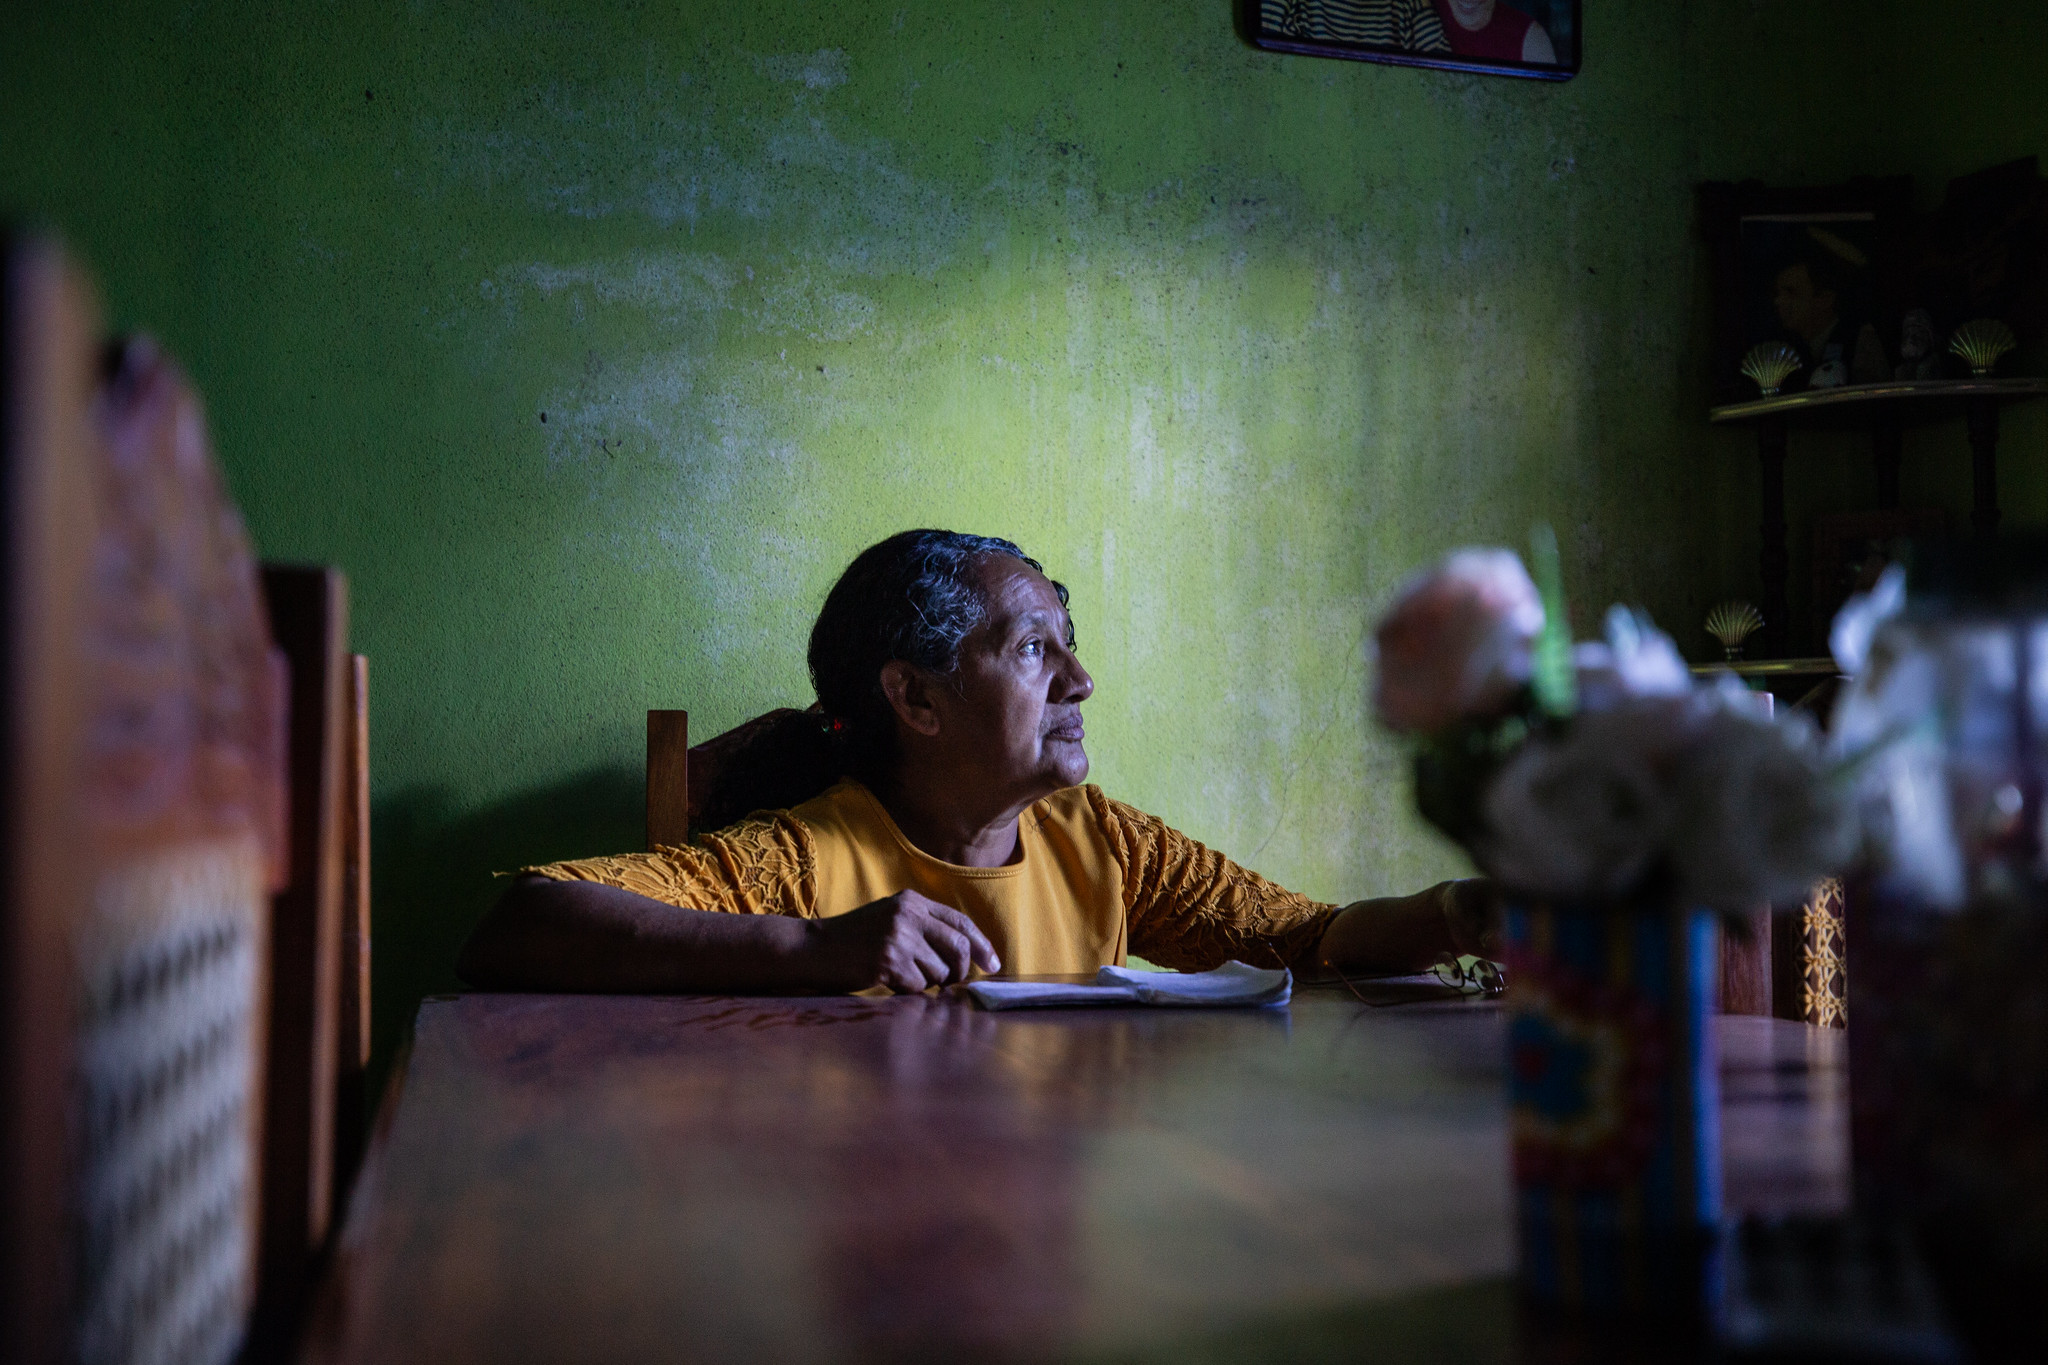 La desesperada búsqueda de nicas desaparecidos en México: “Mientras no haya un cuerpo, hay esperanza”